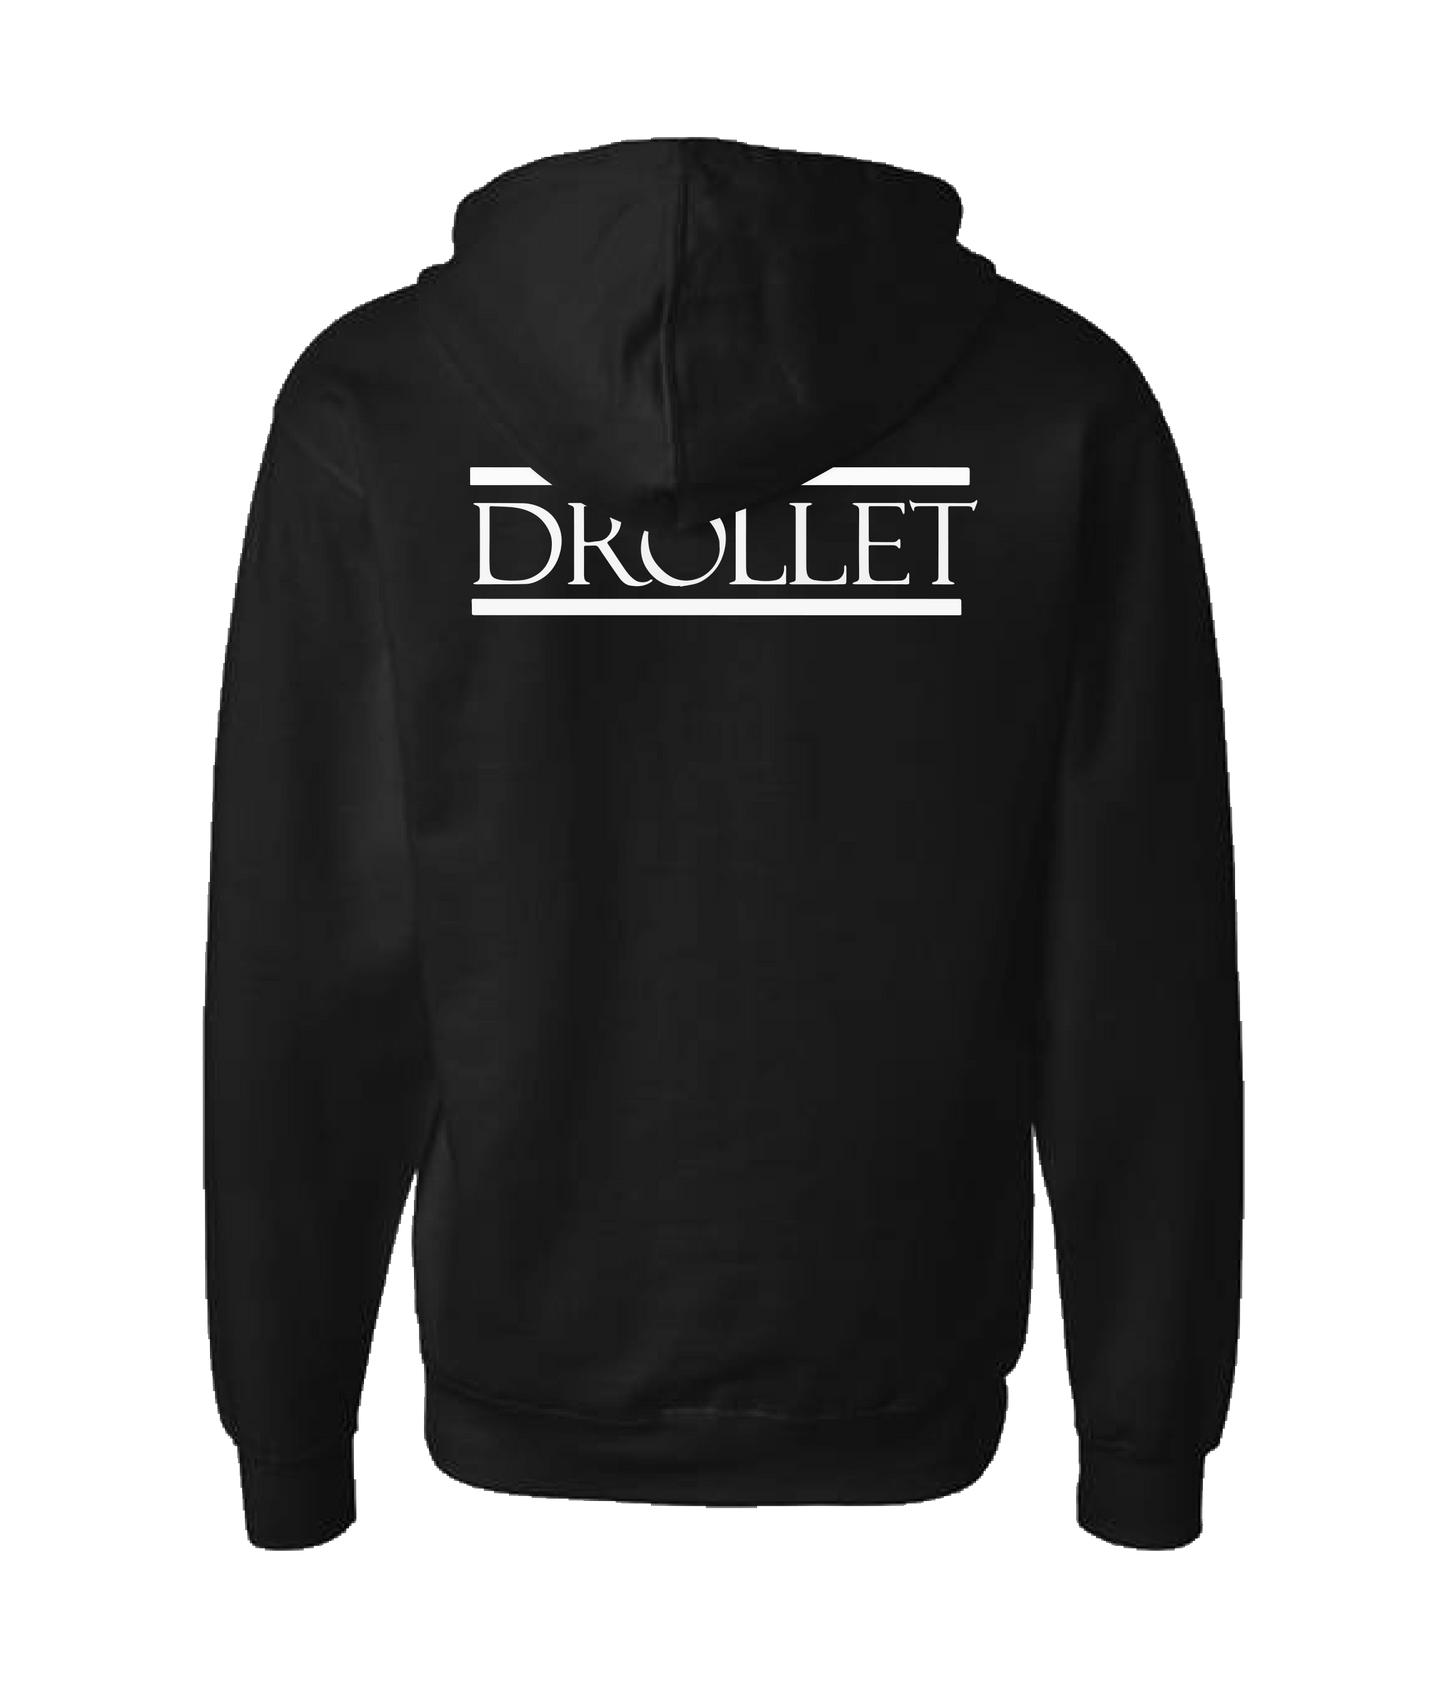 Drollet - Logo - Black Zip Up Hoodie